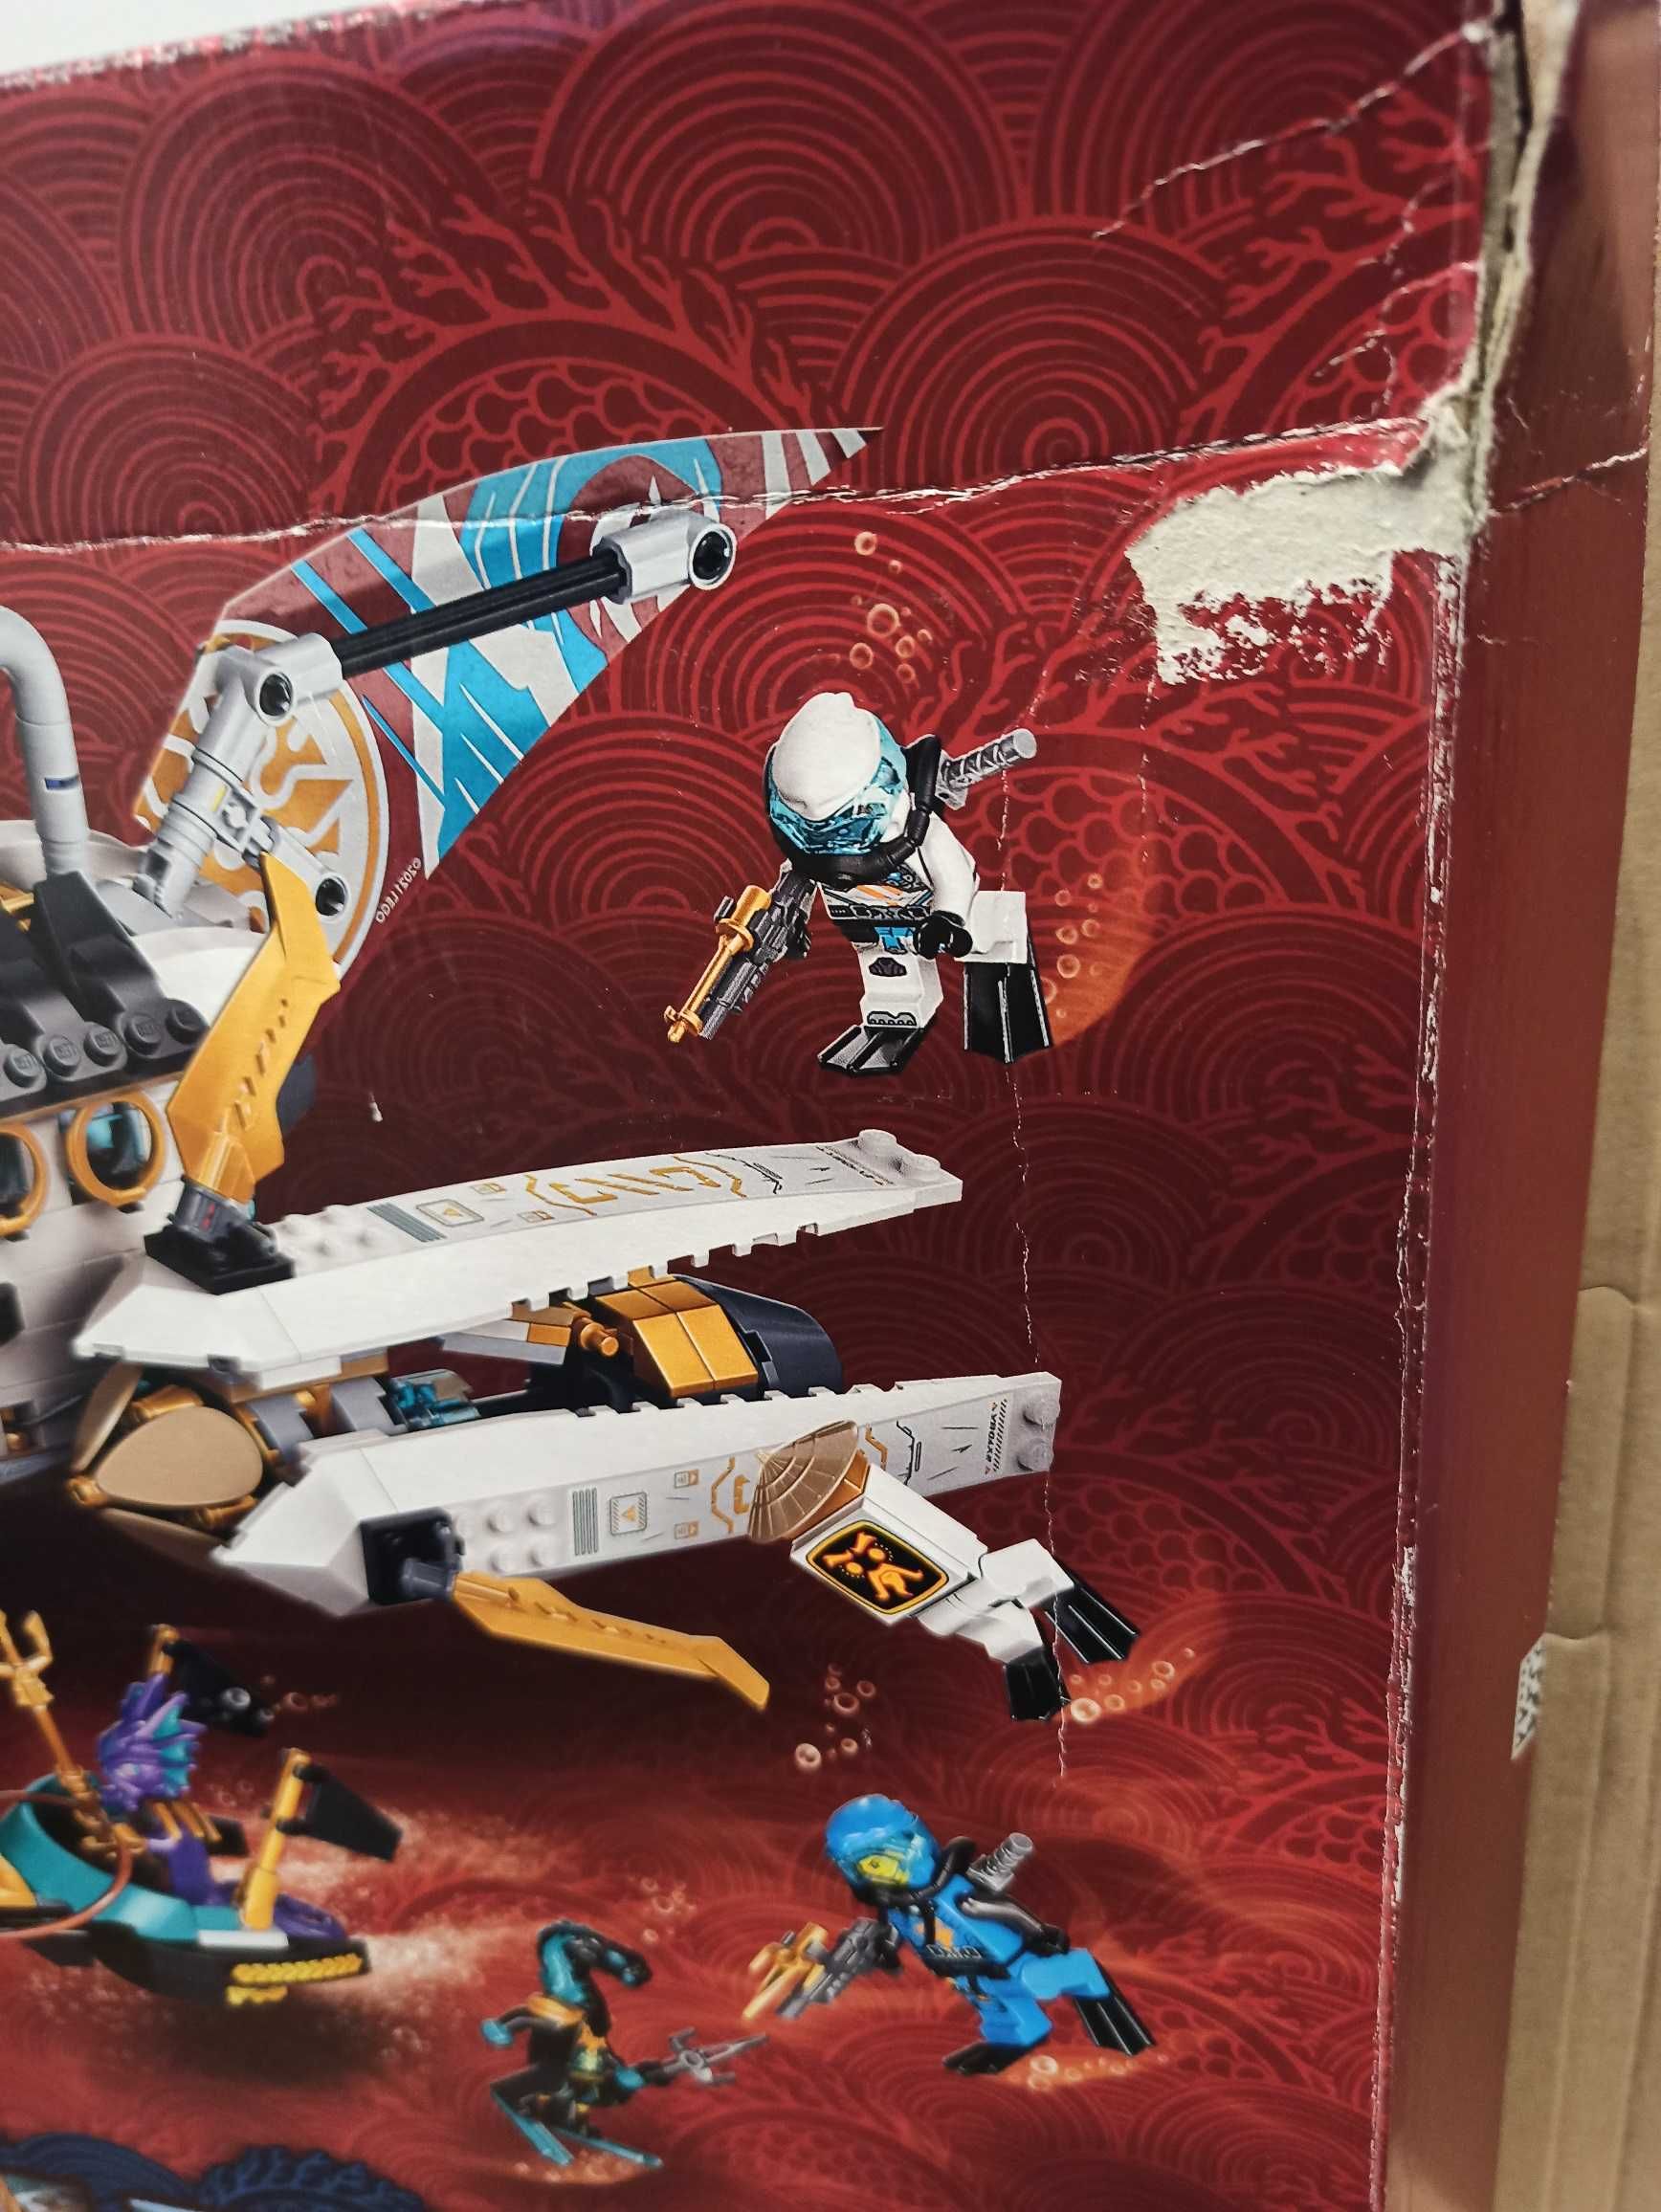 LEGO 71756 Ninjago - Pływająca Perła / Hydro Bounty